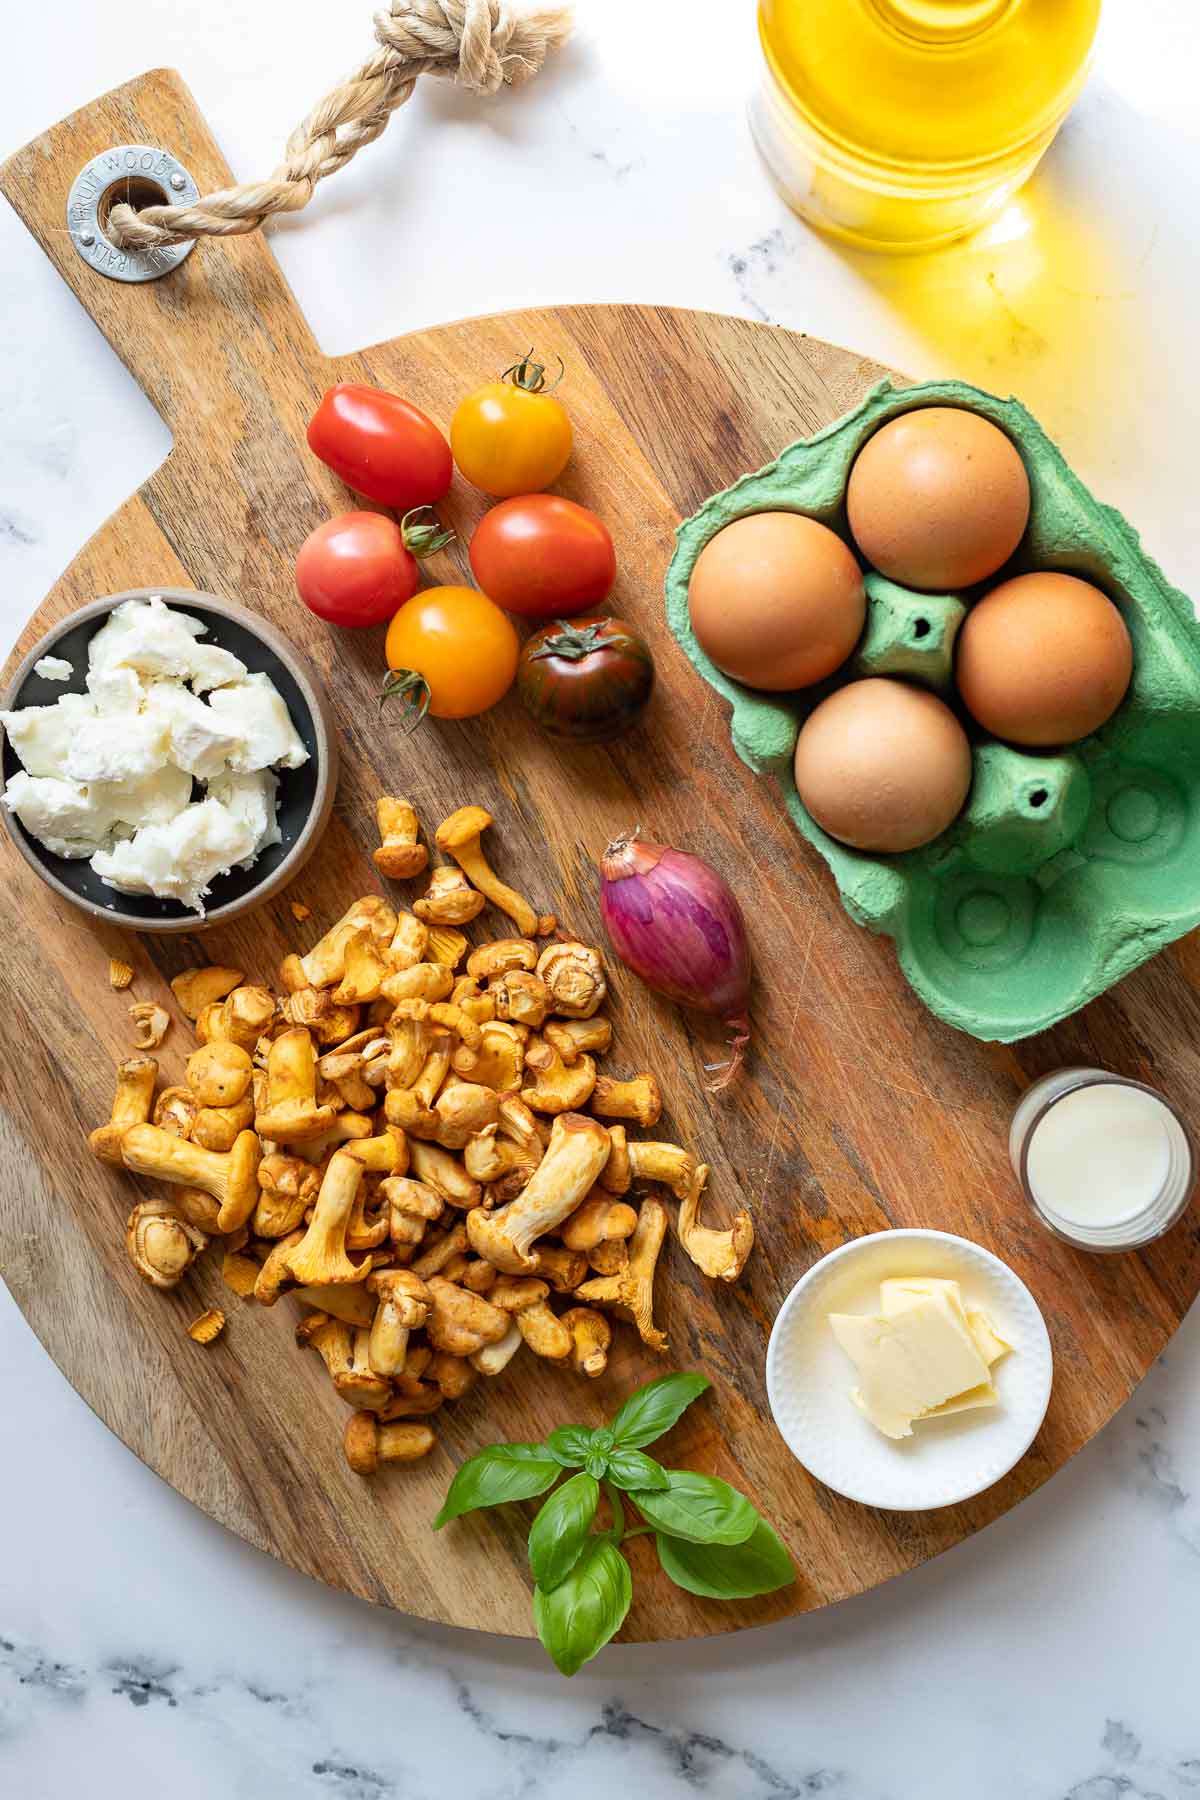 Zutaten für Pilz-Omelette